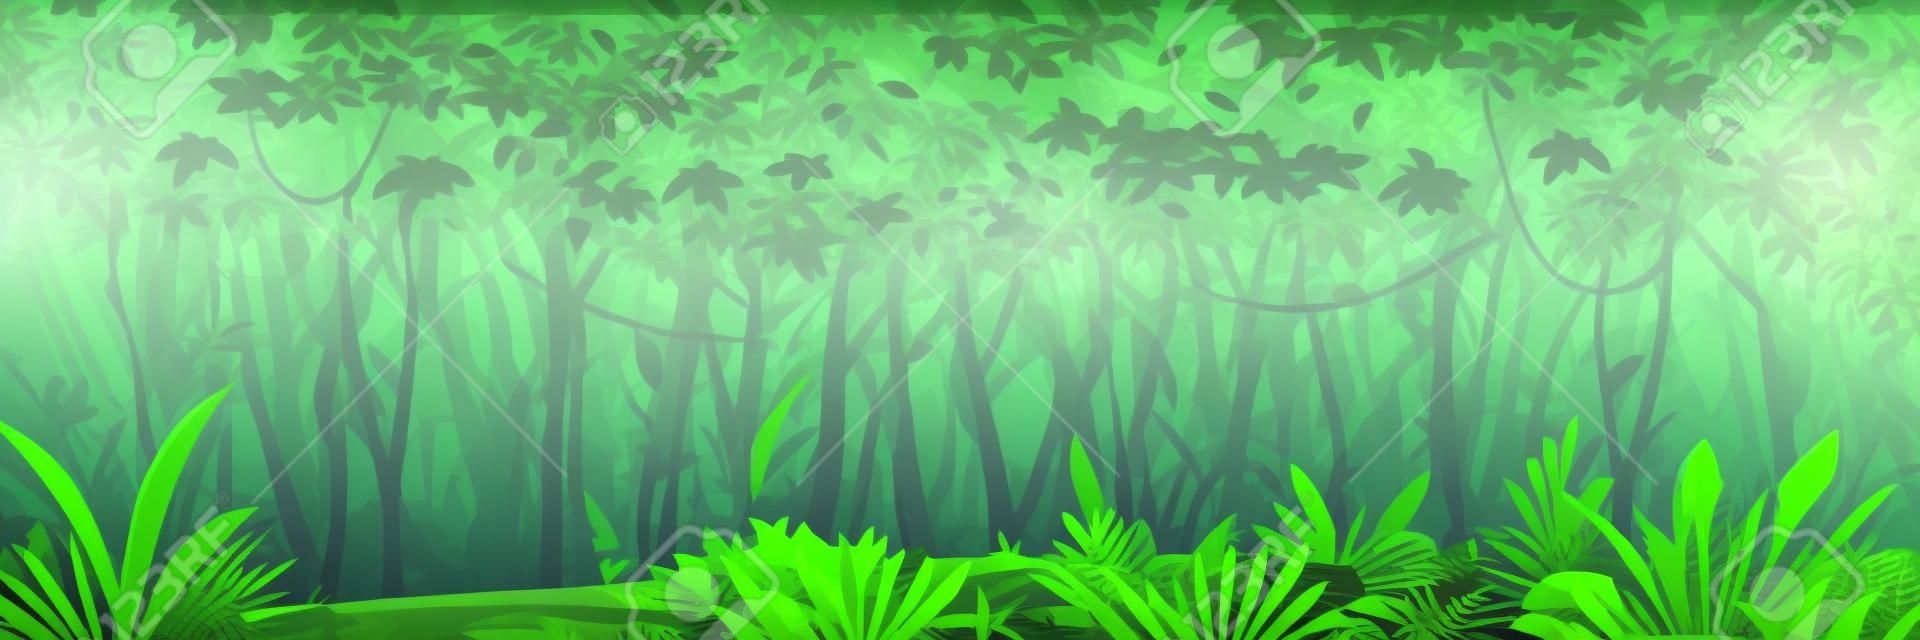 Dziki mokry ciemny las dżungli z drzewami, krzewami i lianami, krajobraz przyrody z zielonymi liśćmi dżungli i egzotycznymi roślinami rosnącymi na ziemi, poziomy baner z tropikalnymi roślinami w słoneczny dzień